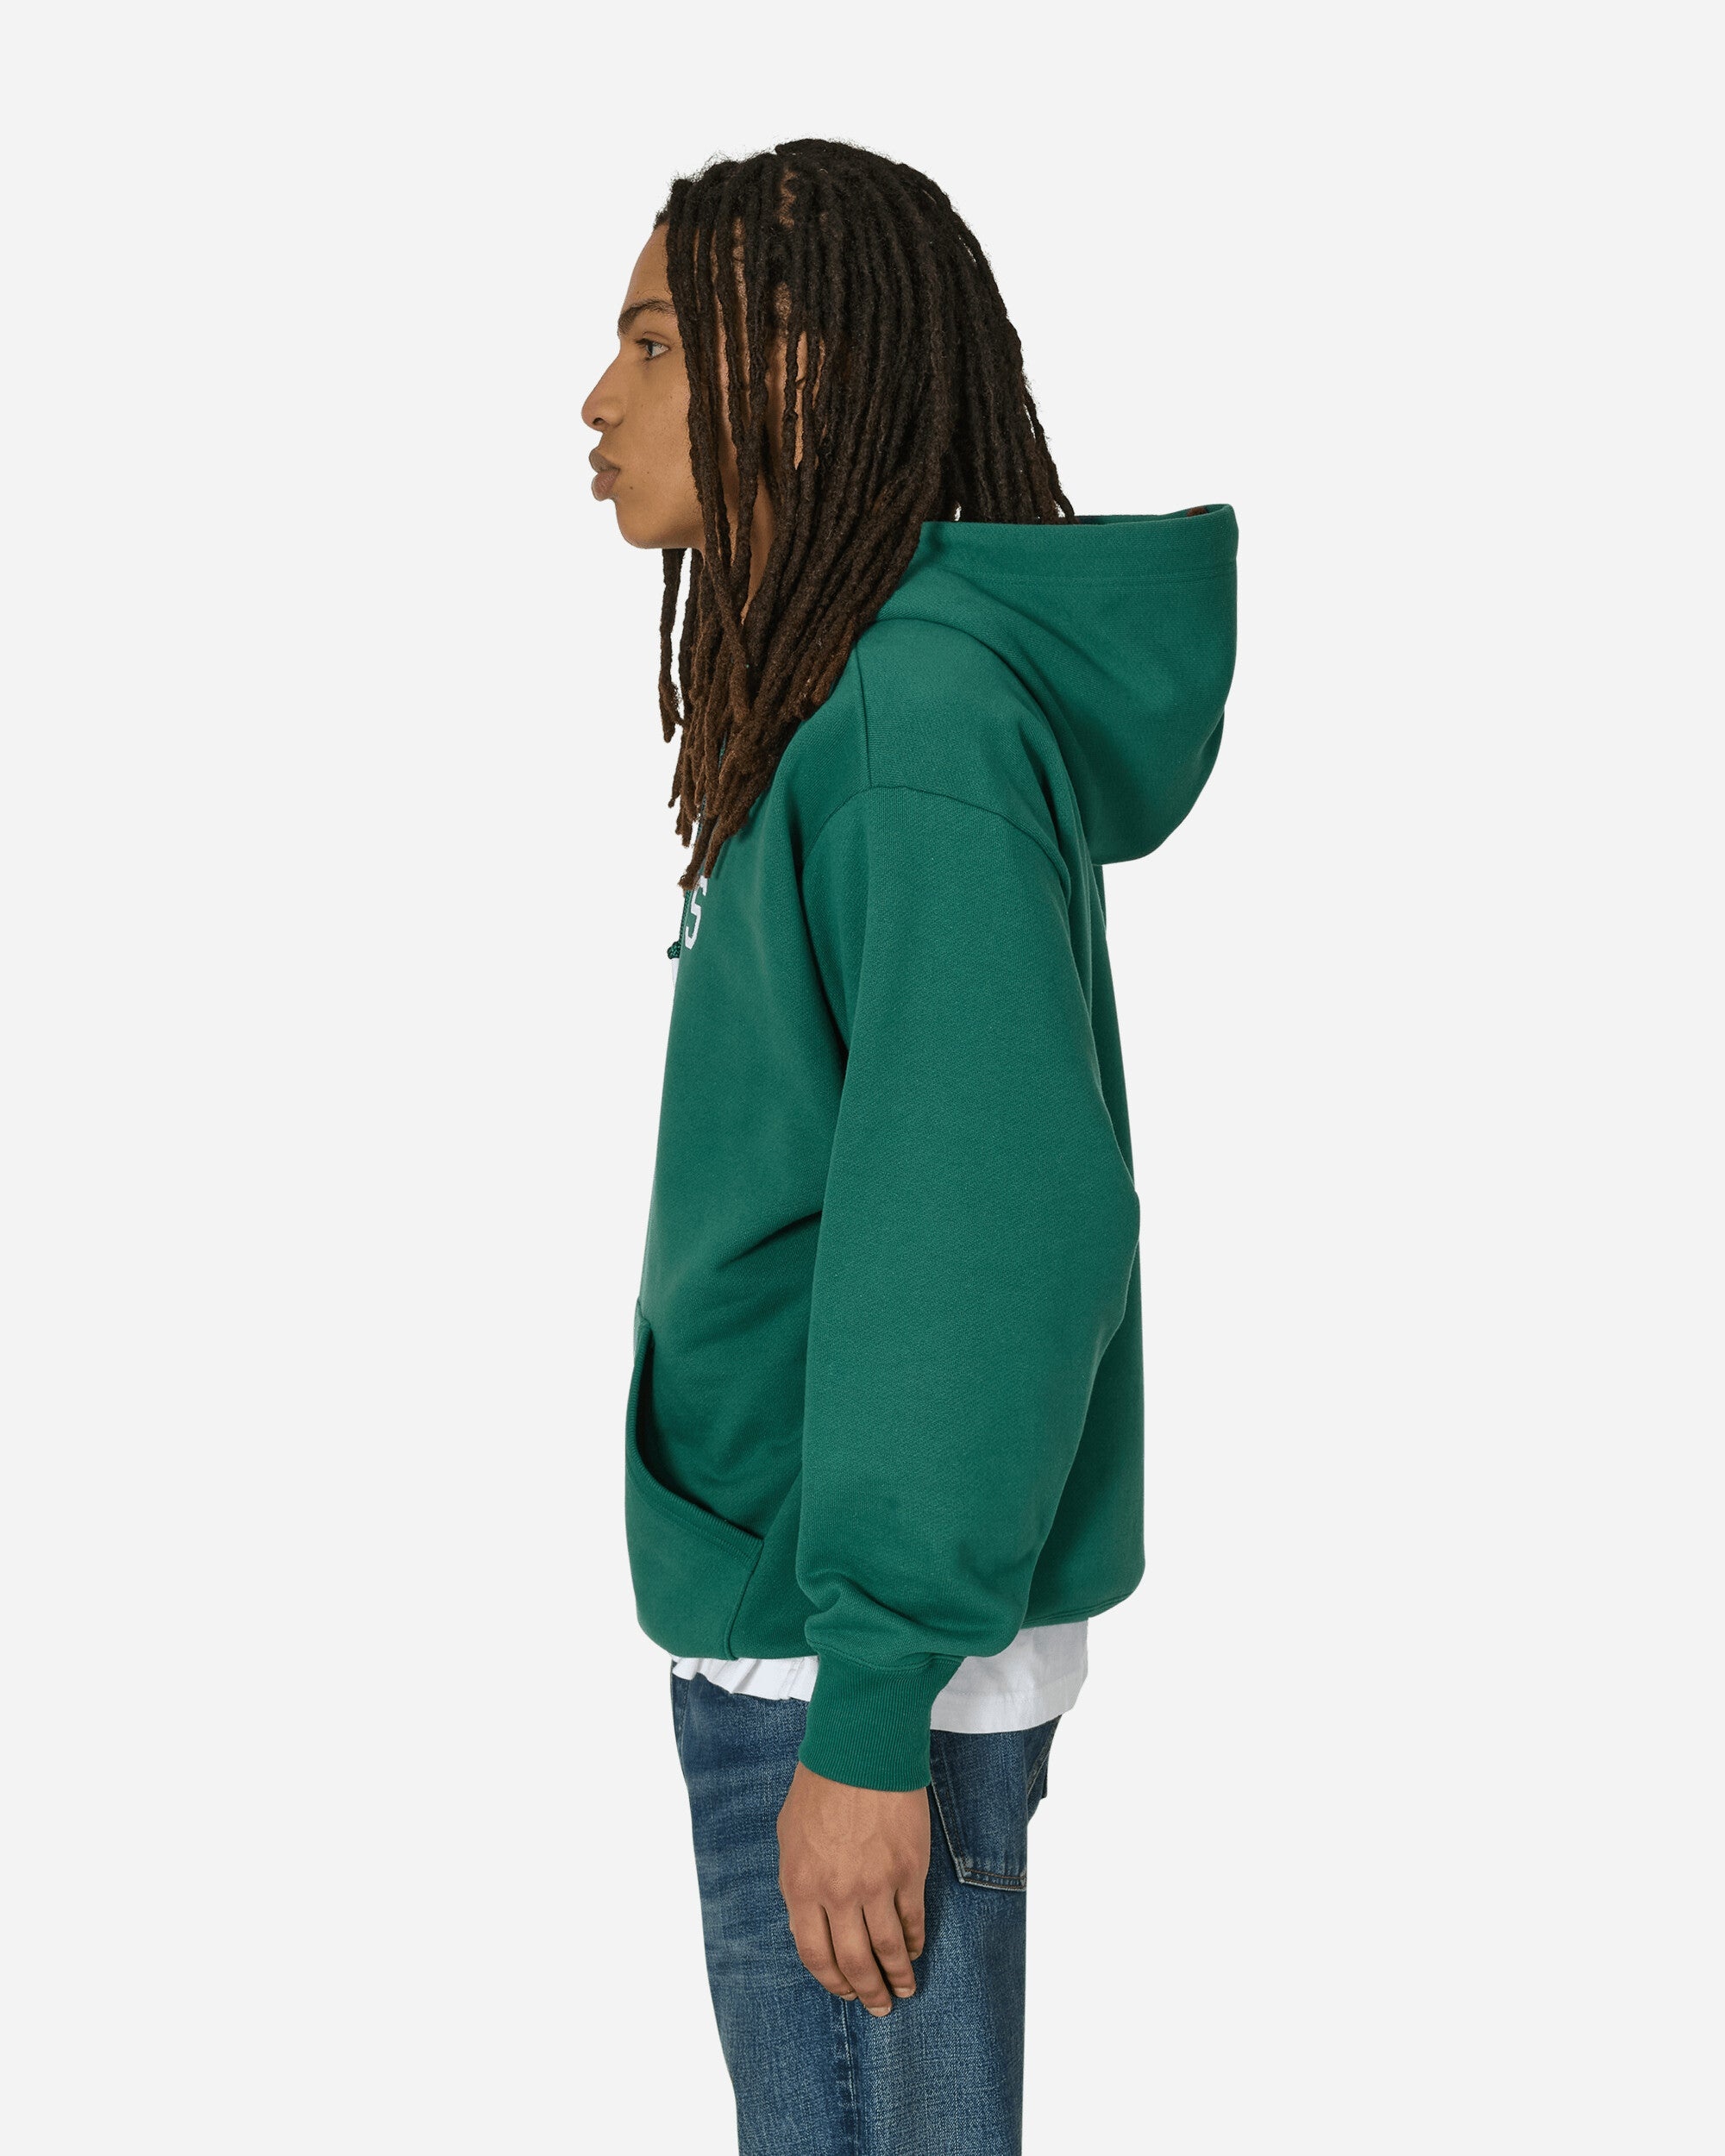 Academy Hooded Sweatshirt Green - 2